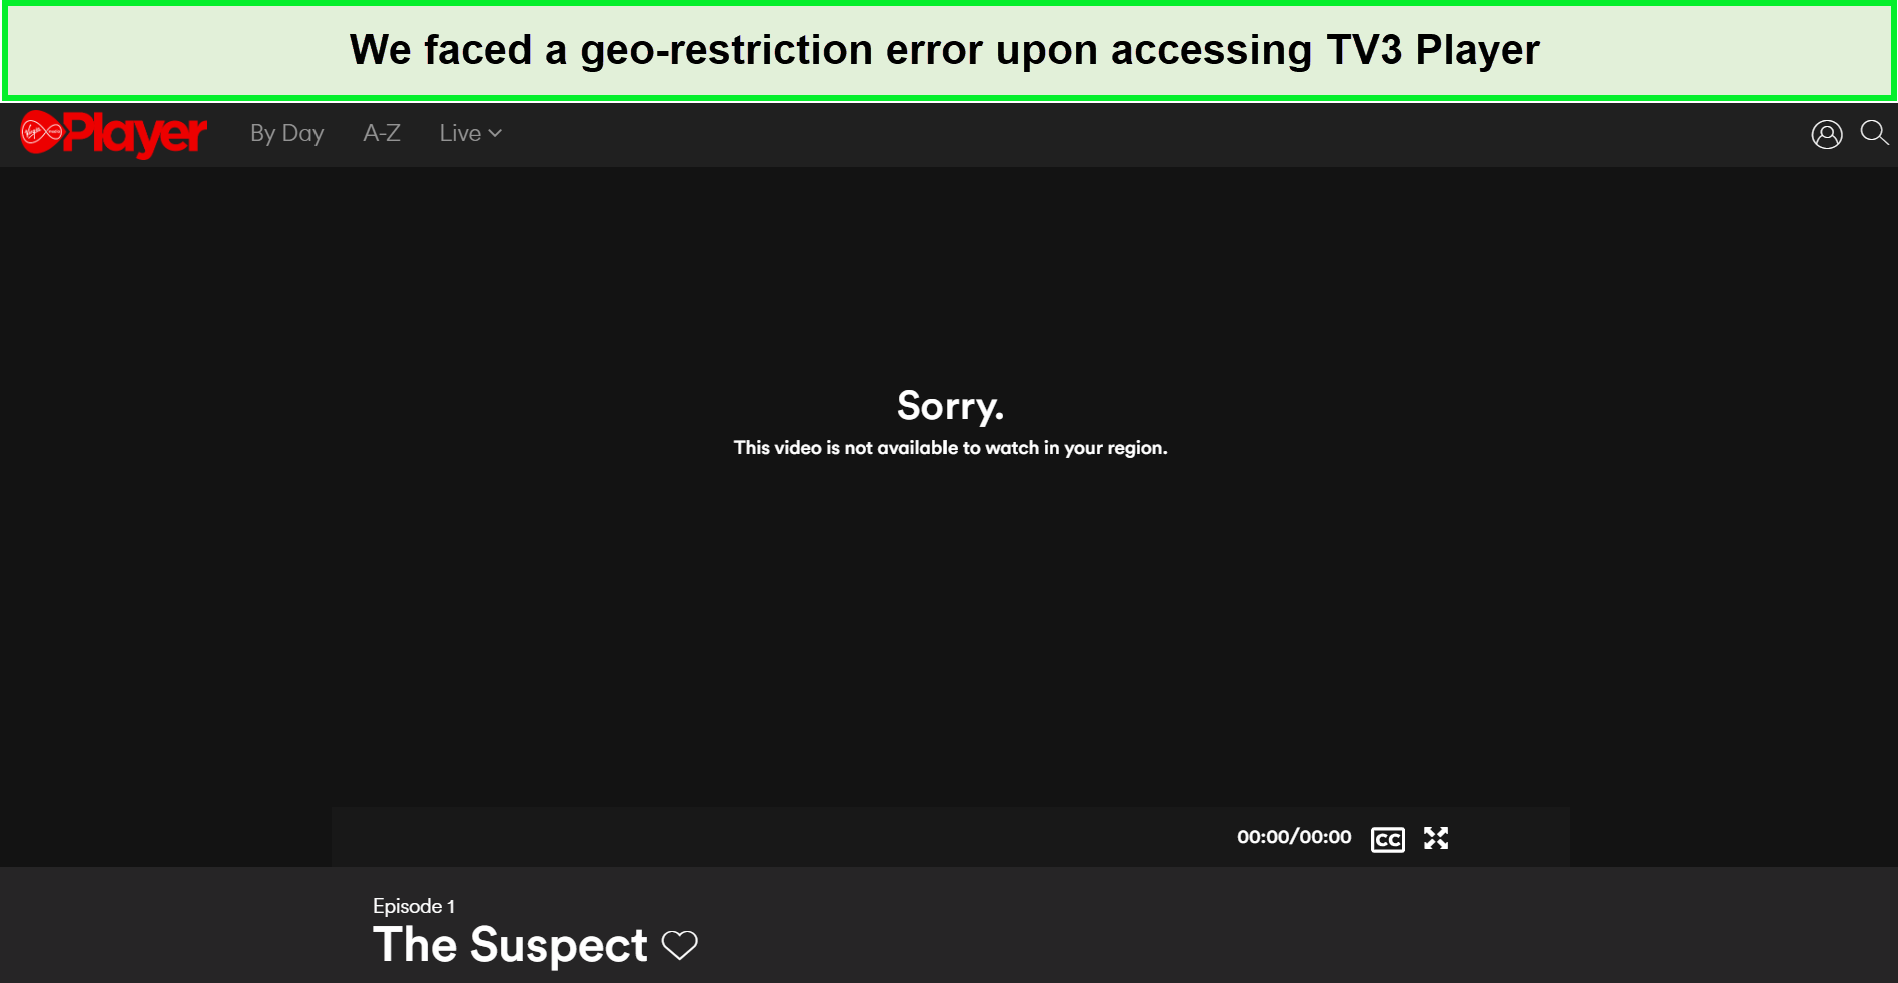 tv3-player-geo-restriction-error-in-UAE